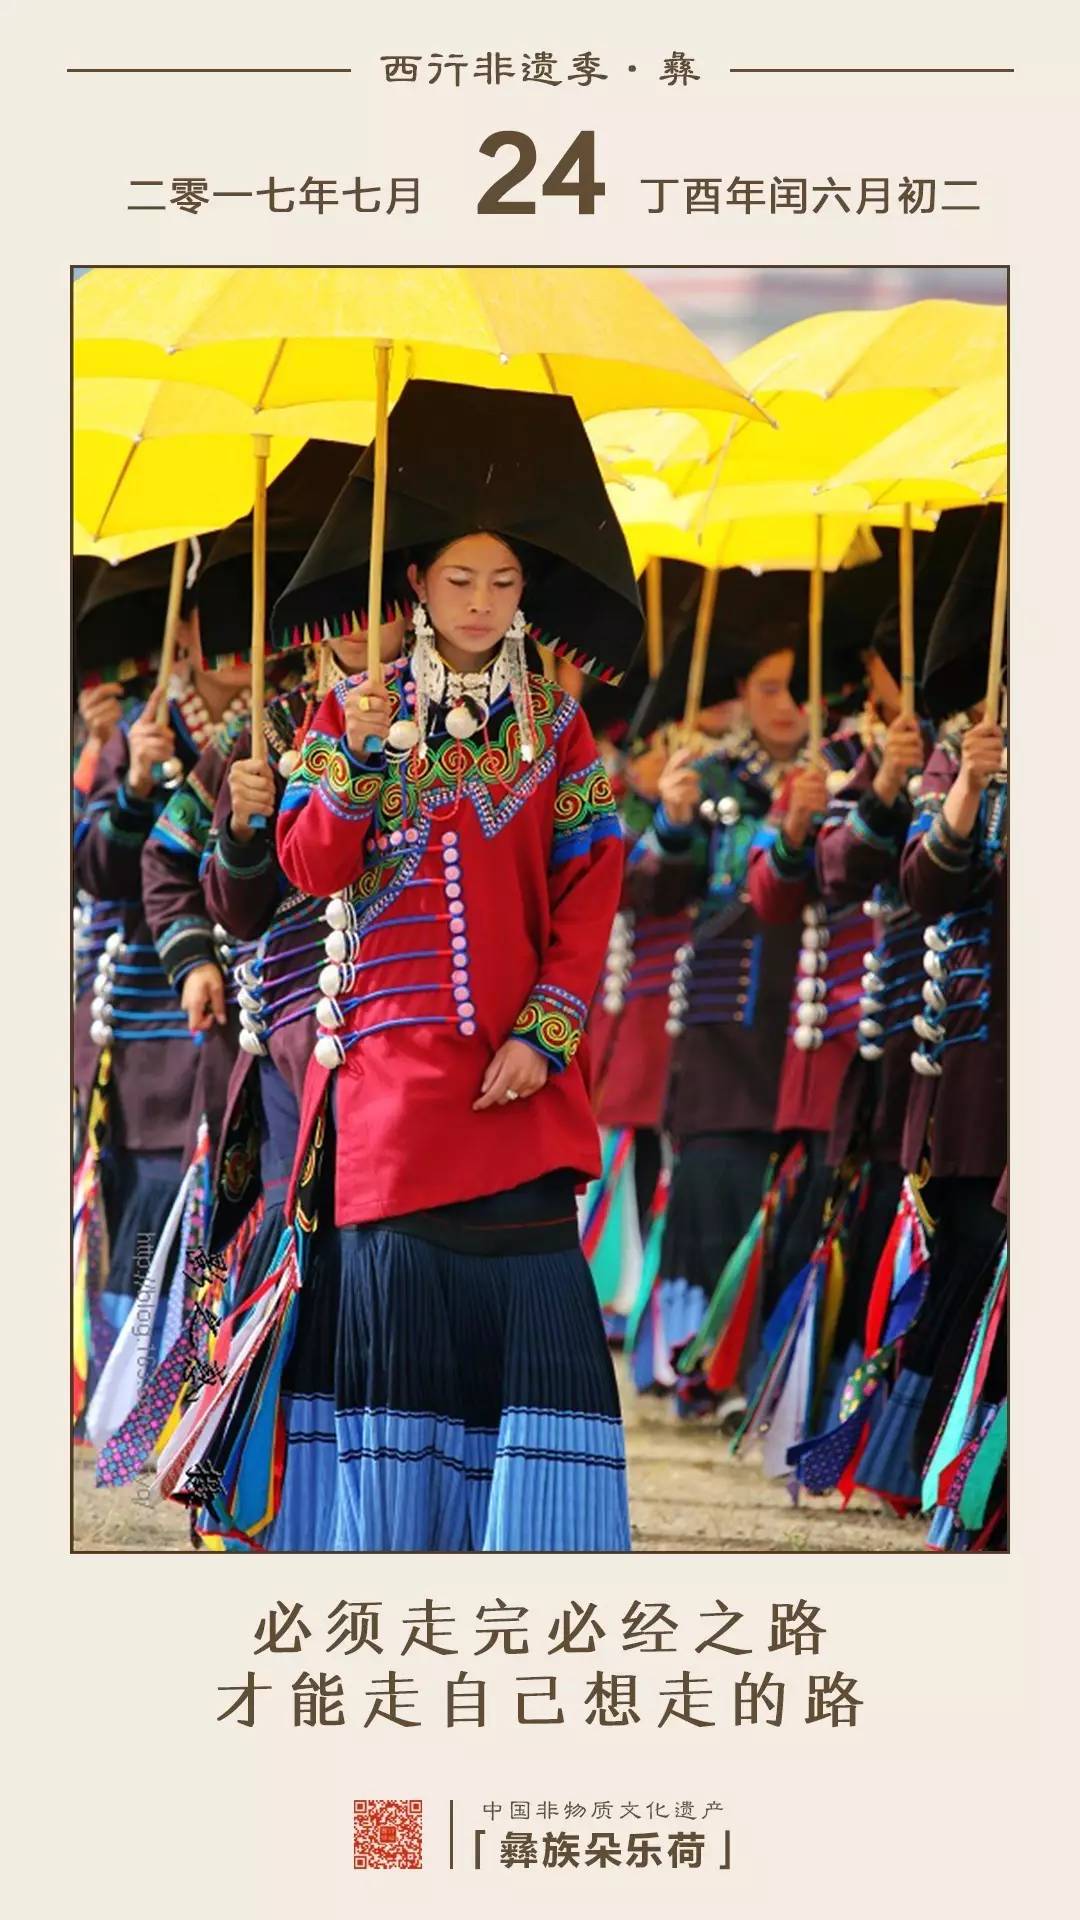 旅游 正文  编辑丨阿洛 "朵乐荷"是凉山彝族一年一度的传统节日火把节